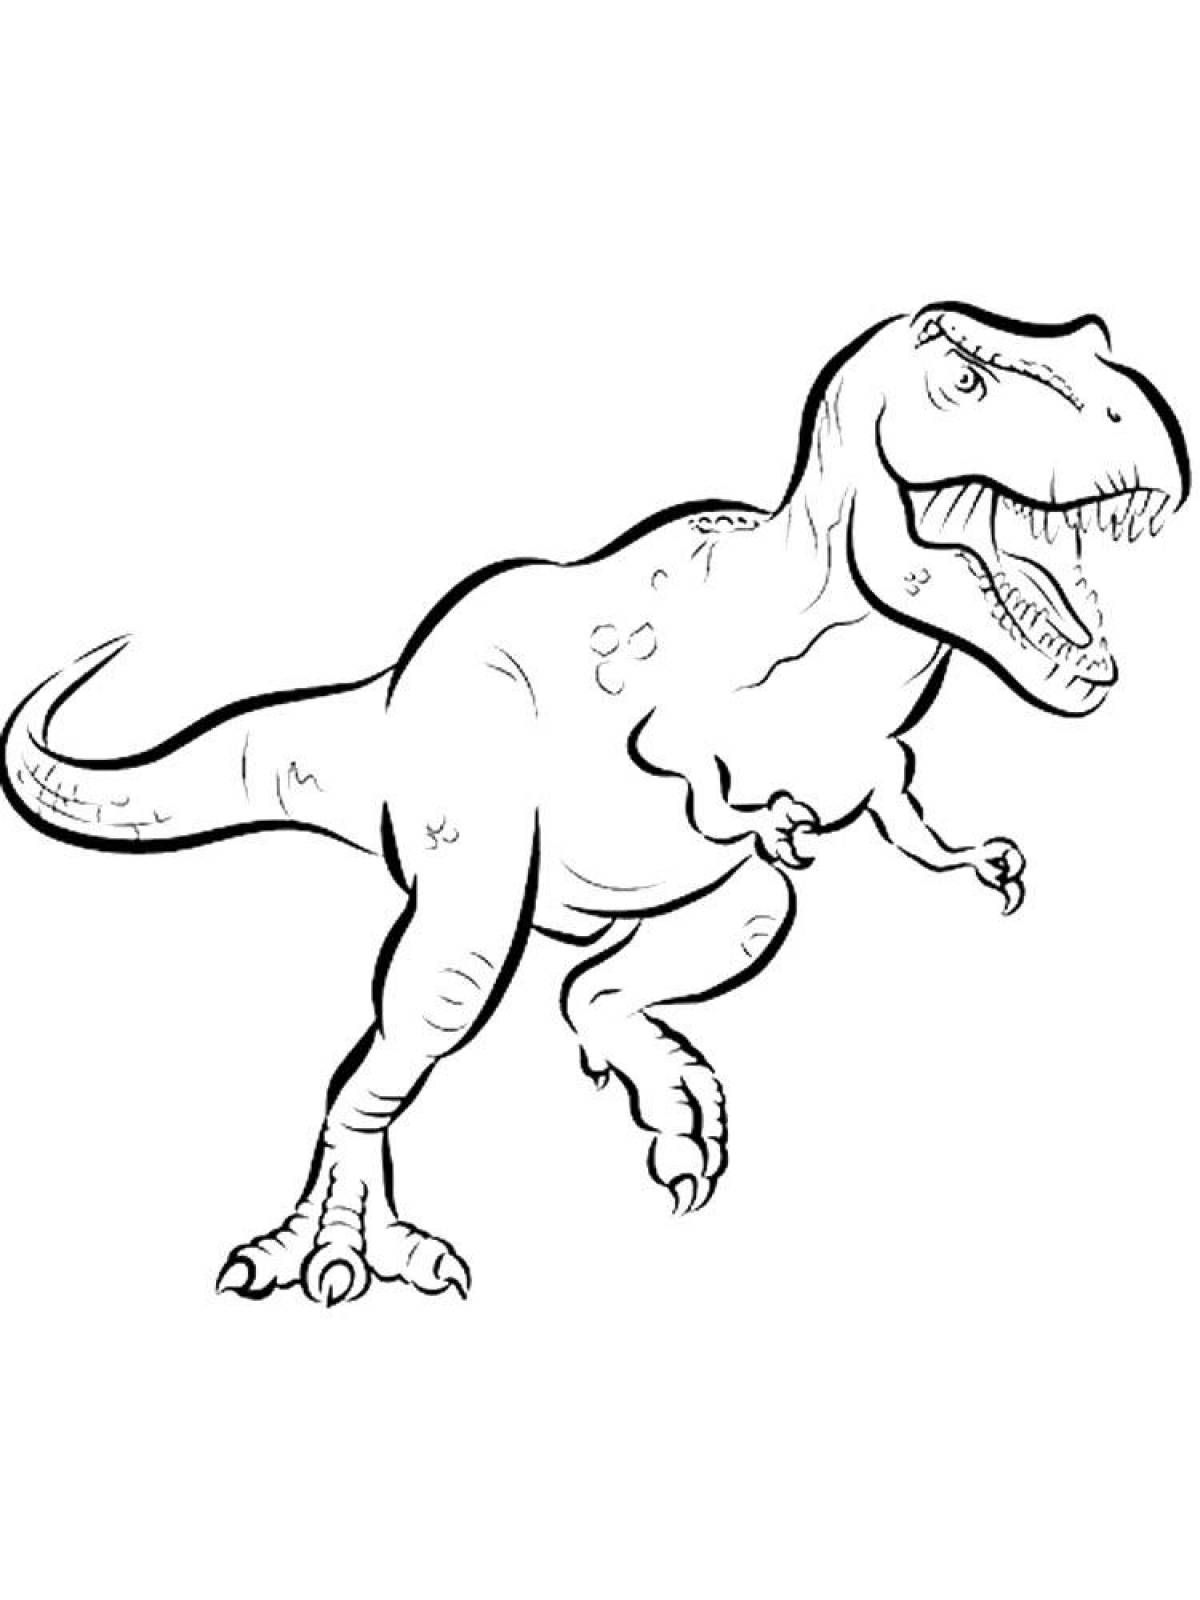 Огромная страница раскраски динозавр рекс